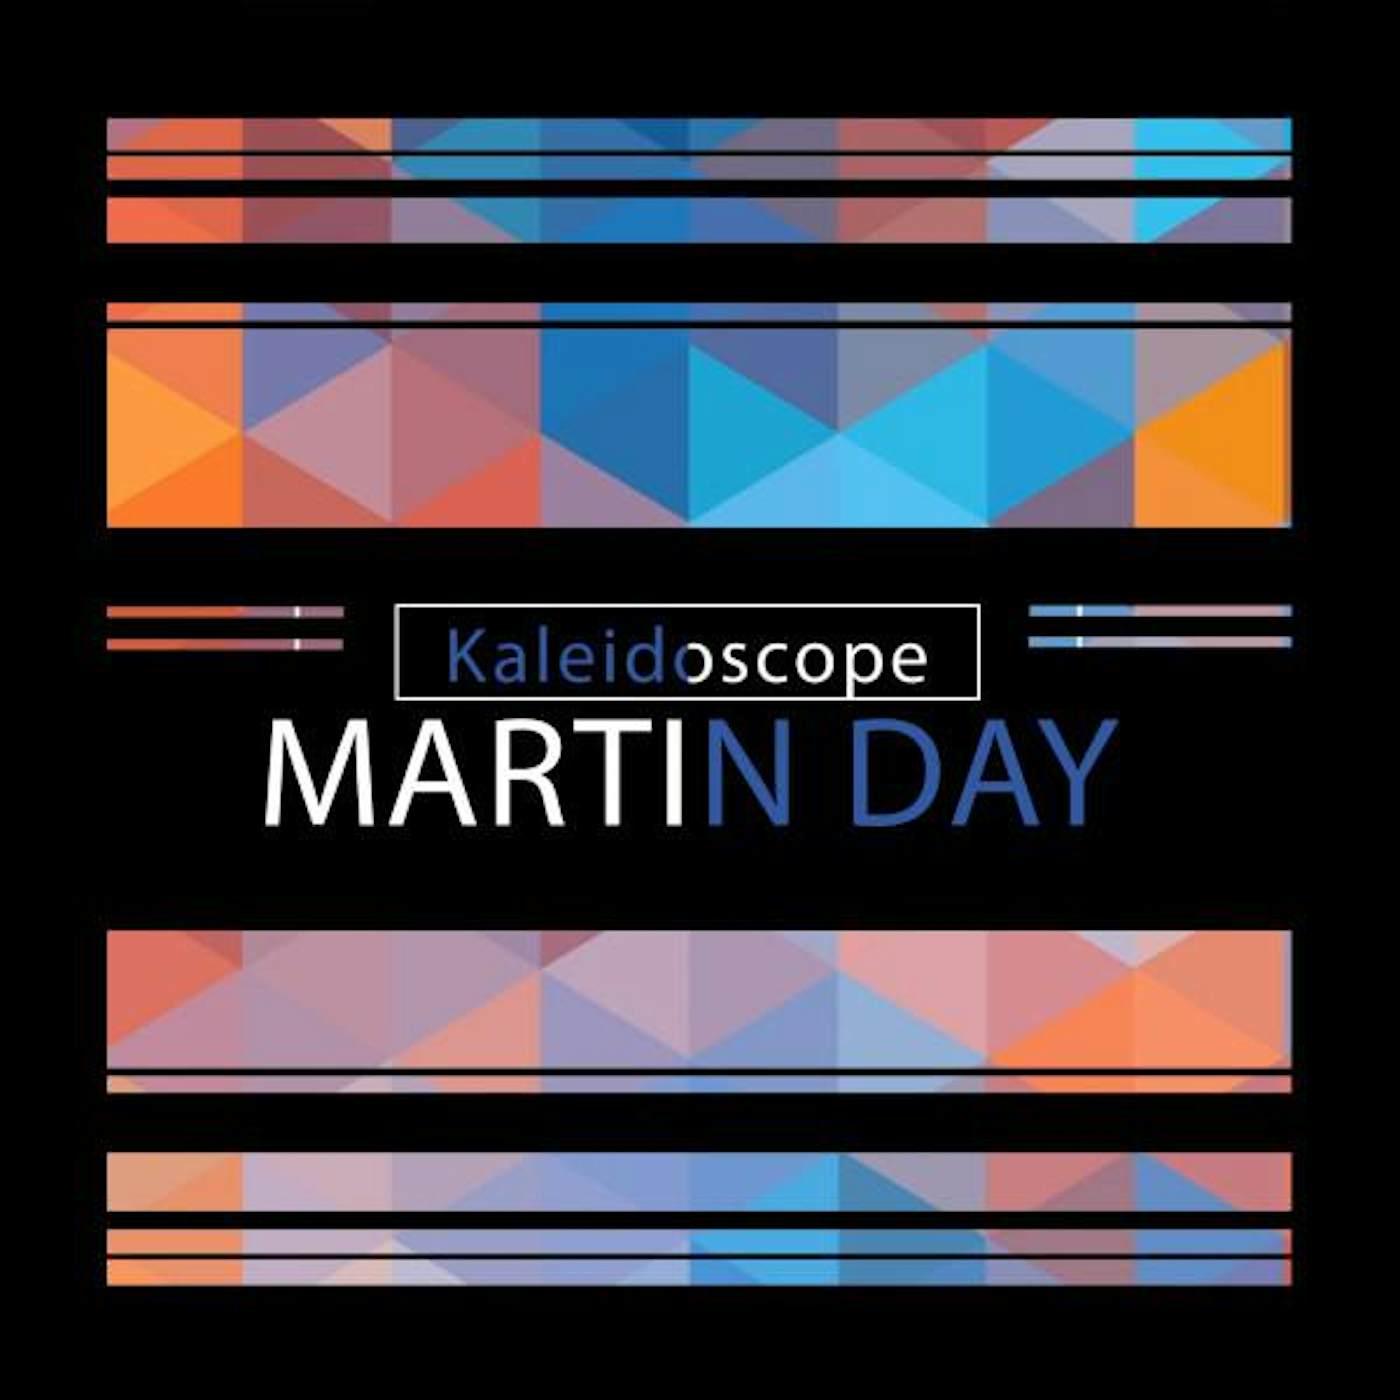 Martin Day